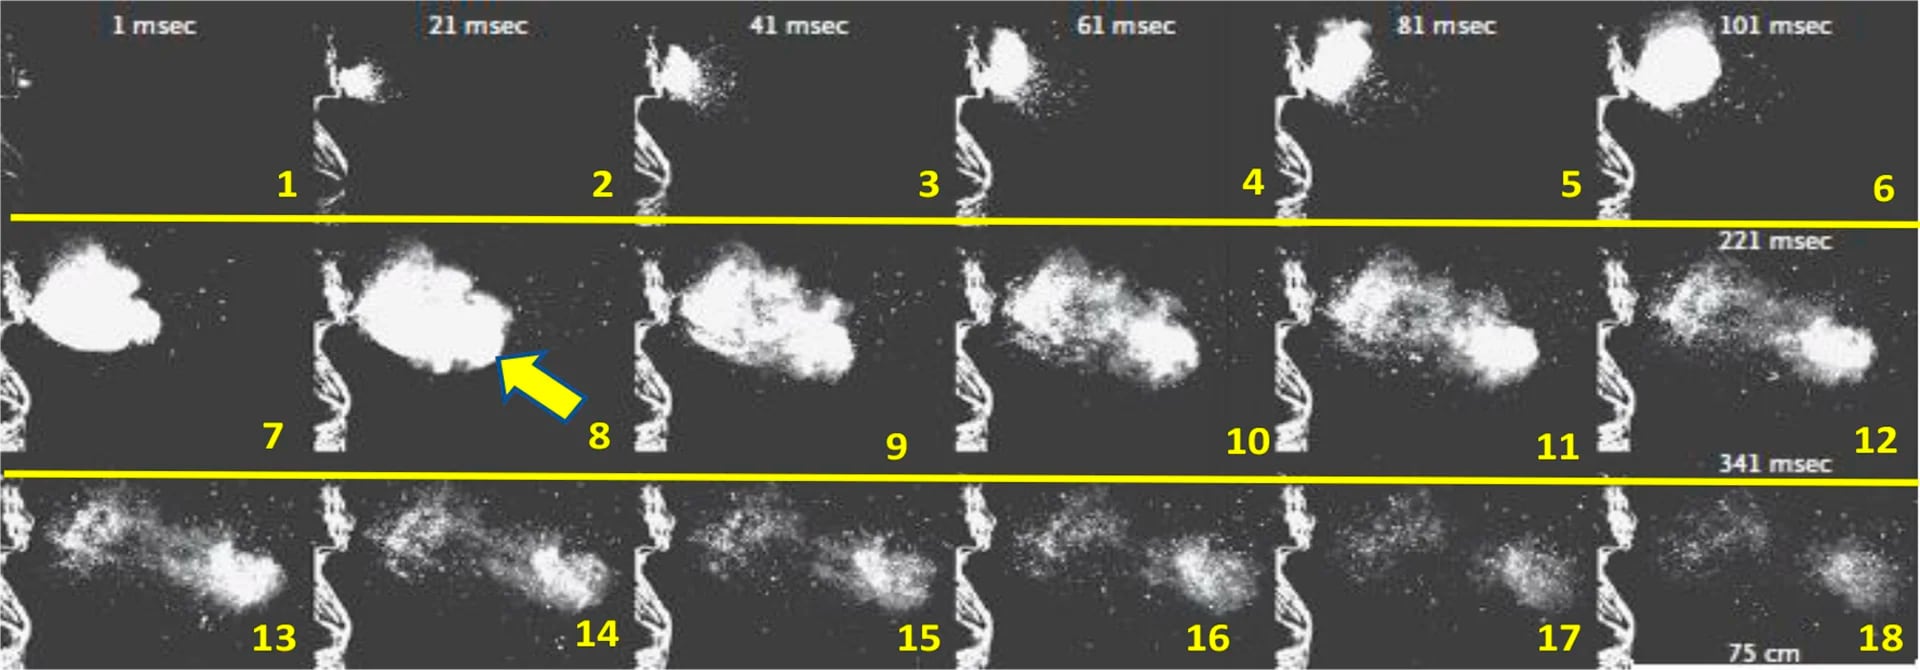 Estornudo con 1000 f/s. En estos 18 cuadros 20 mseg de diferencia se observa el desarrollo de la gran Nube de Gas Turbulenta que atrapa el aire ambiente. Se observa en cuadrados 3, 4 y 5 el comienzo de la Nube de Gas Turbulenta, y en los nro. 6, 7, 8 y 9 su expansión. En los cuadrados finales el inicio de la dispersión, con ya deshidratación de las microgotas con diferentes tamaños. (A Sneeze. Lydia Bourouiba, N Engl J Med 2016; 375:e15 DOI: 10.1056)
